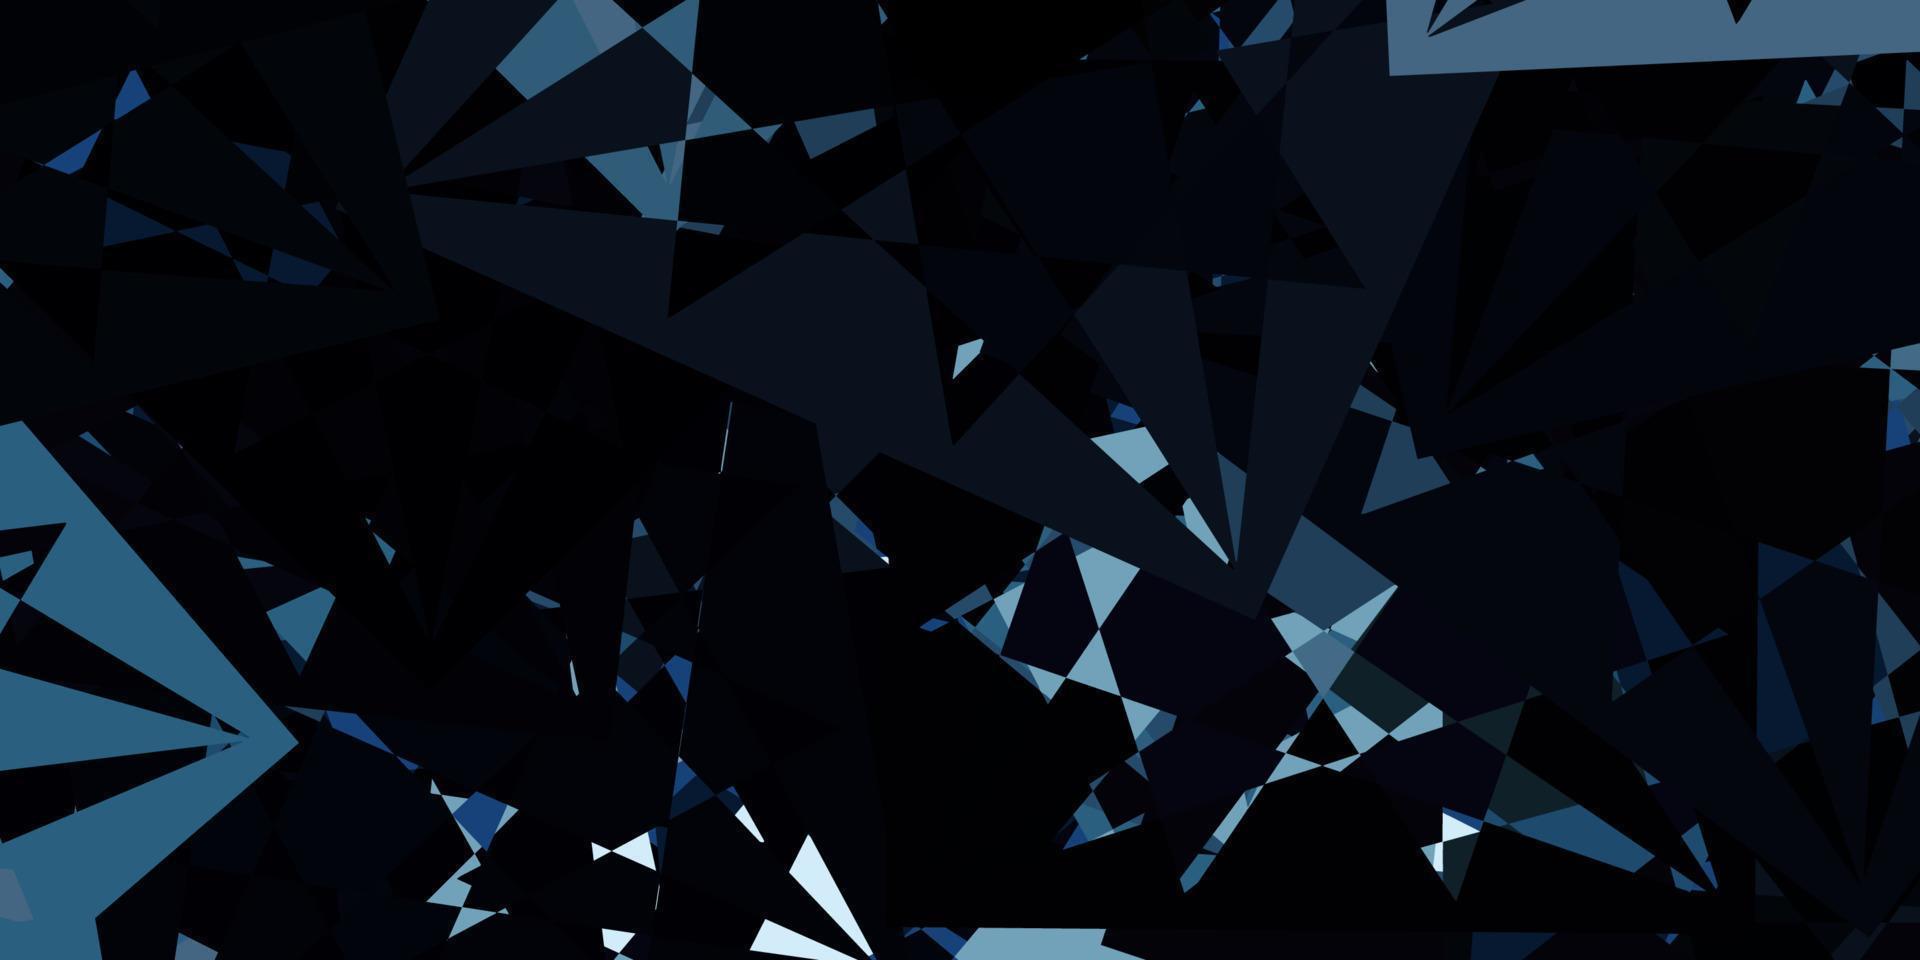 disposition de vecteur bleu clair avec des formes triangulaires.